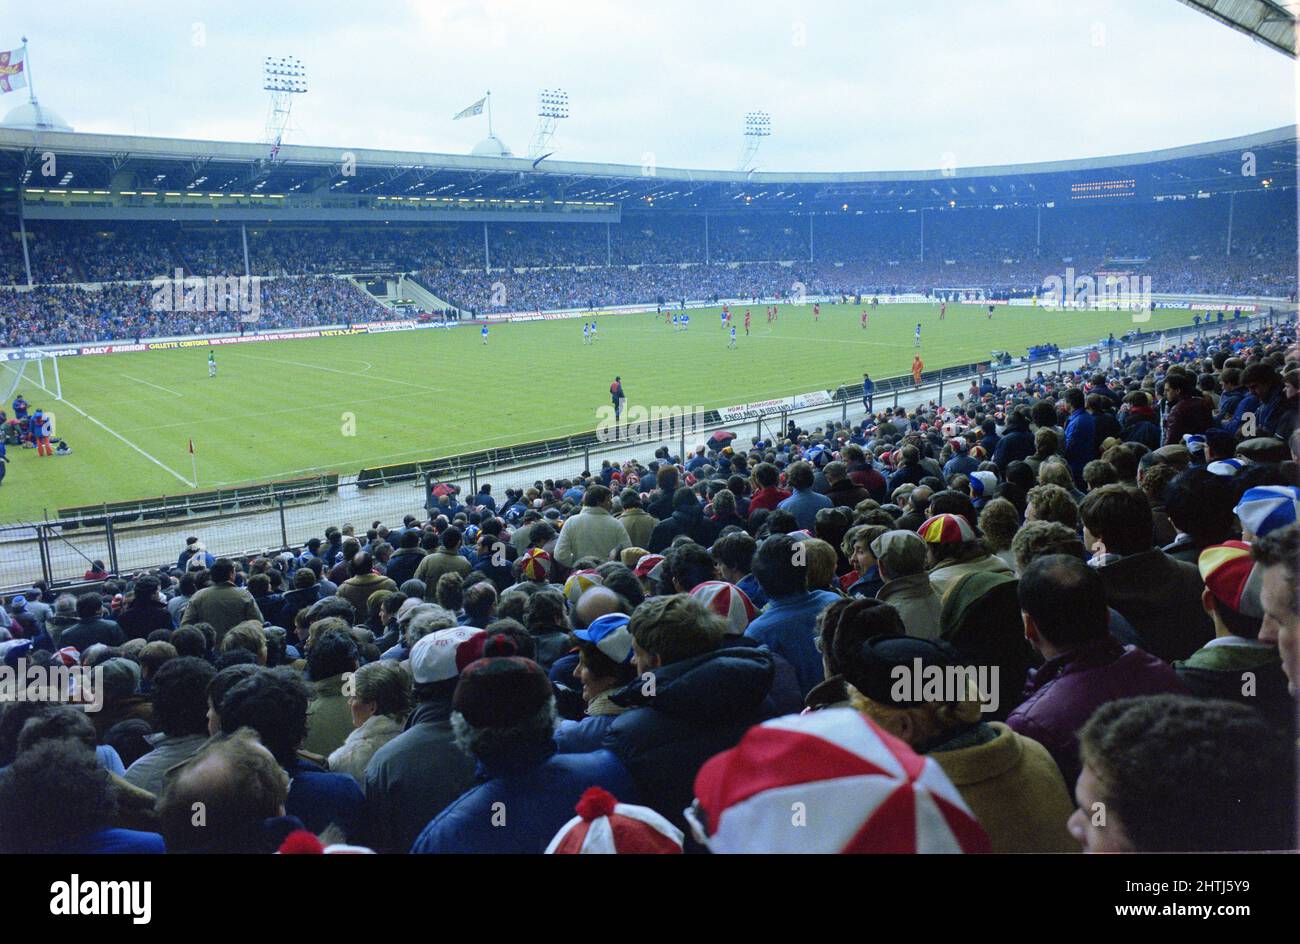 La finale della Coppa di Lega 1984, Liverpool V Everton (0-0) tifosi misti, come i tifosi Merseyside non si preoccupavano della segregazione in quei giorni. Foto Stock